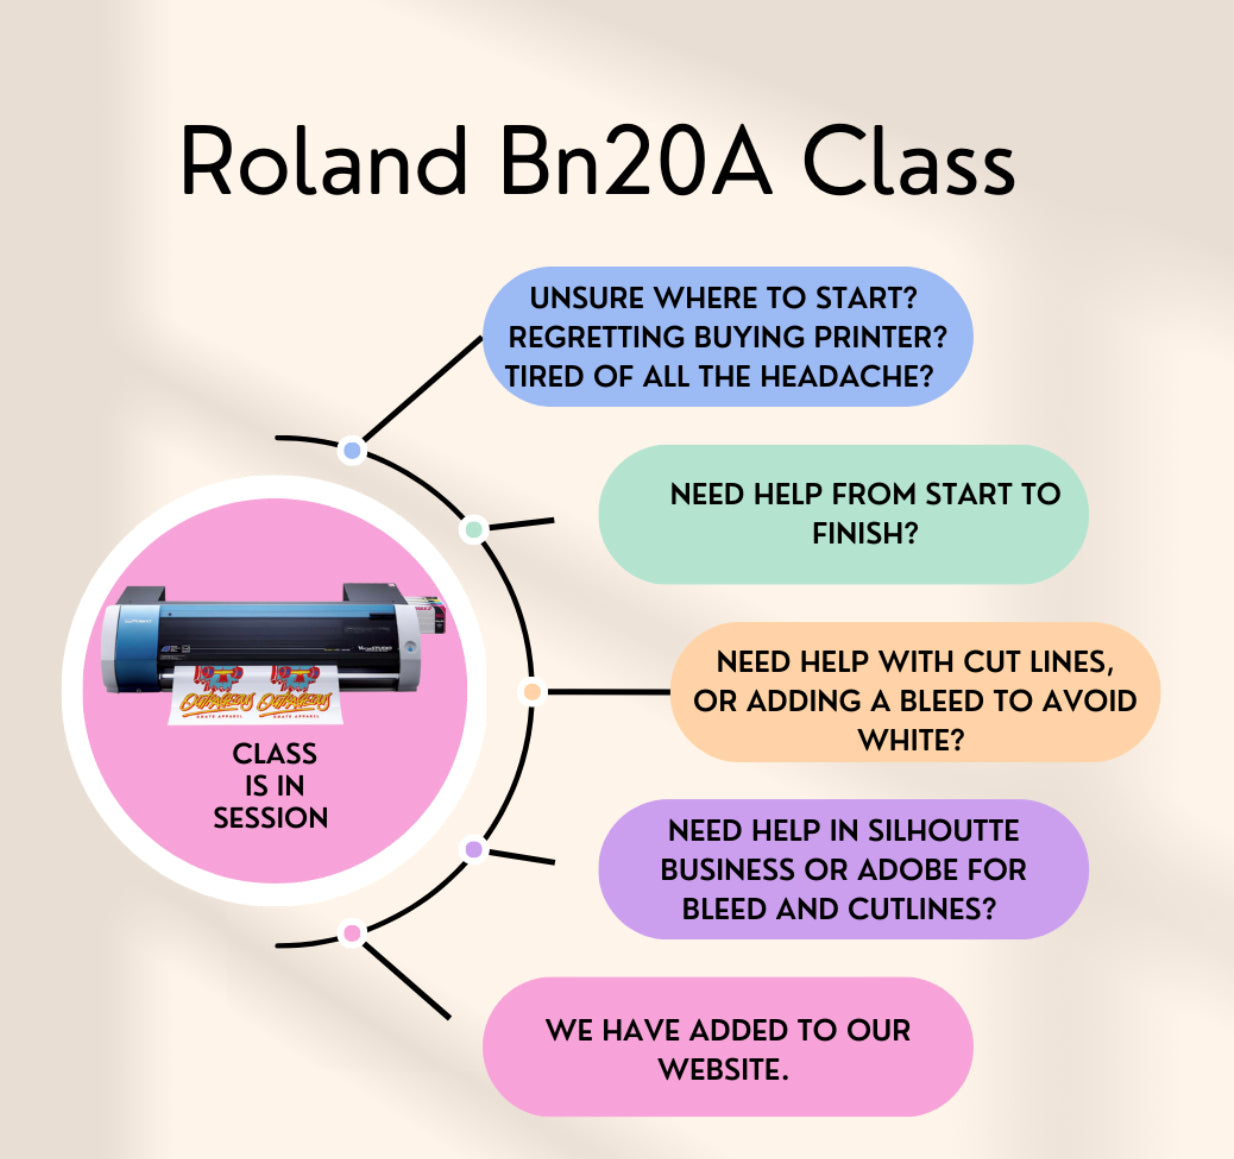 Roland Bn20a Zoom Class-Beginner 2hr Class